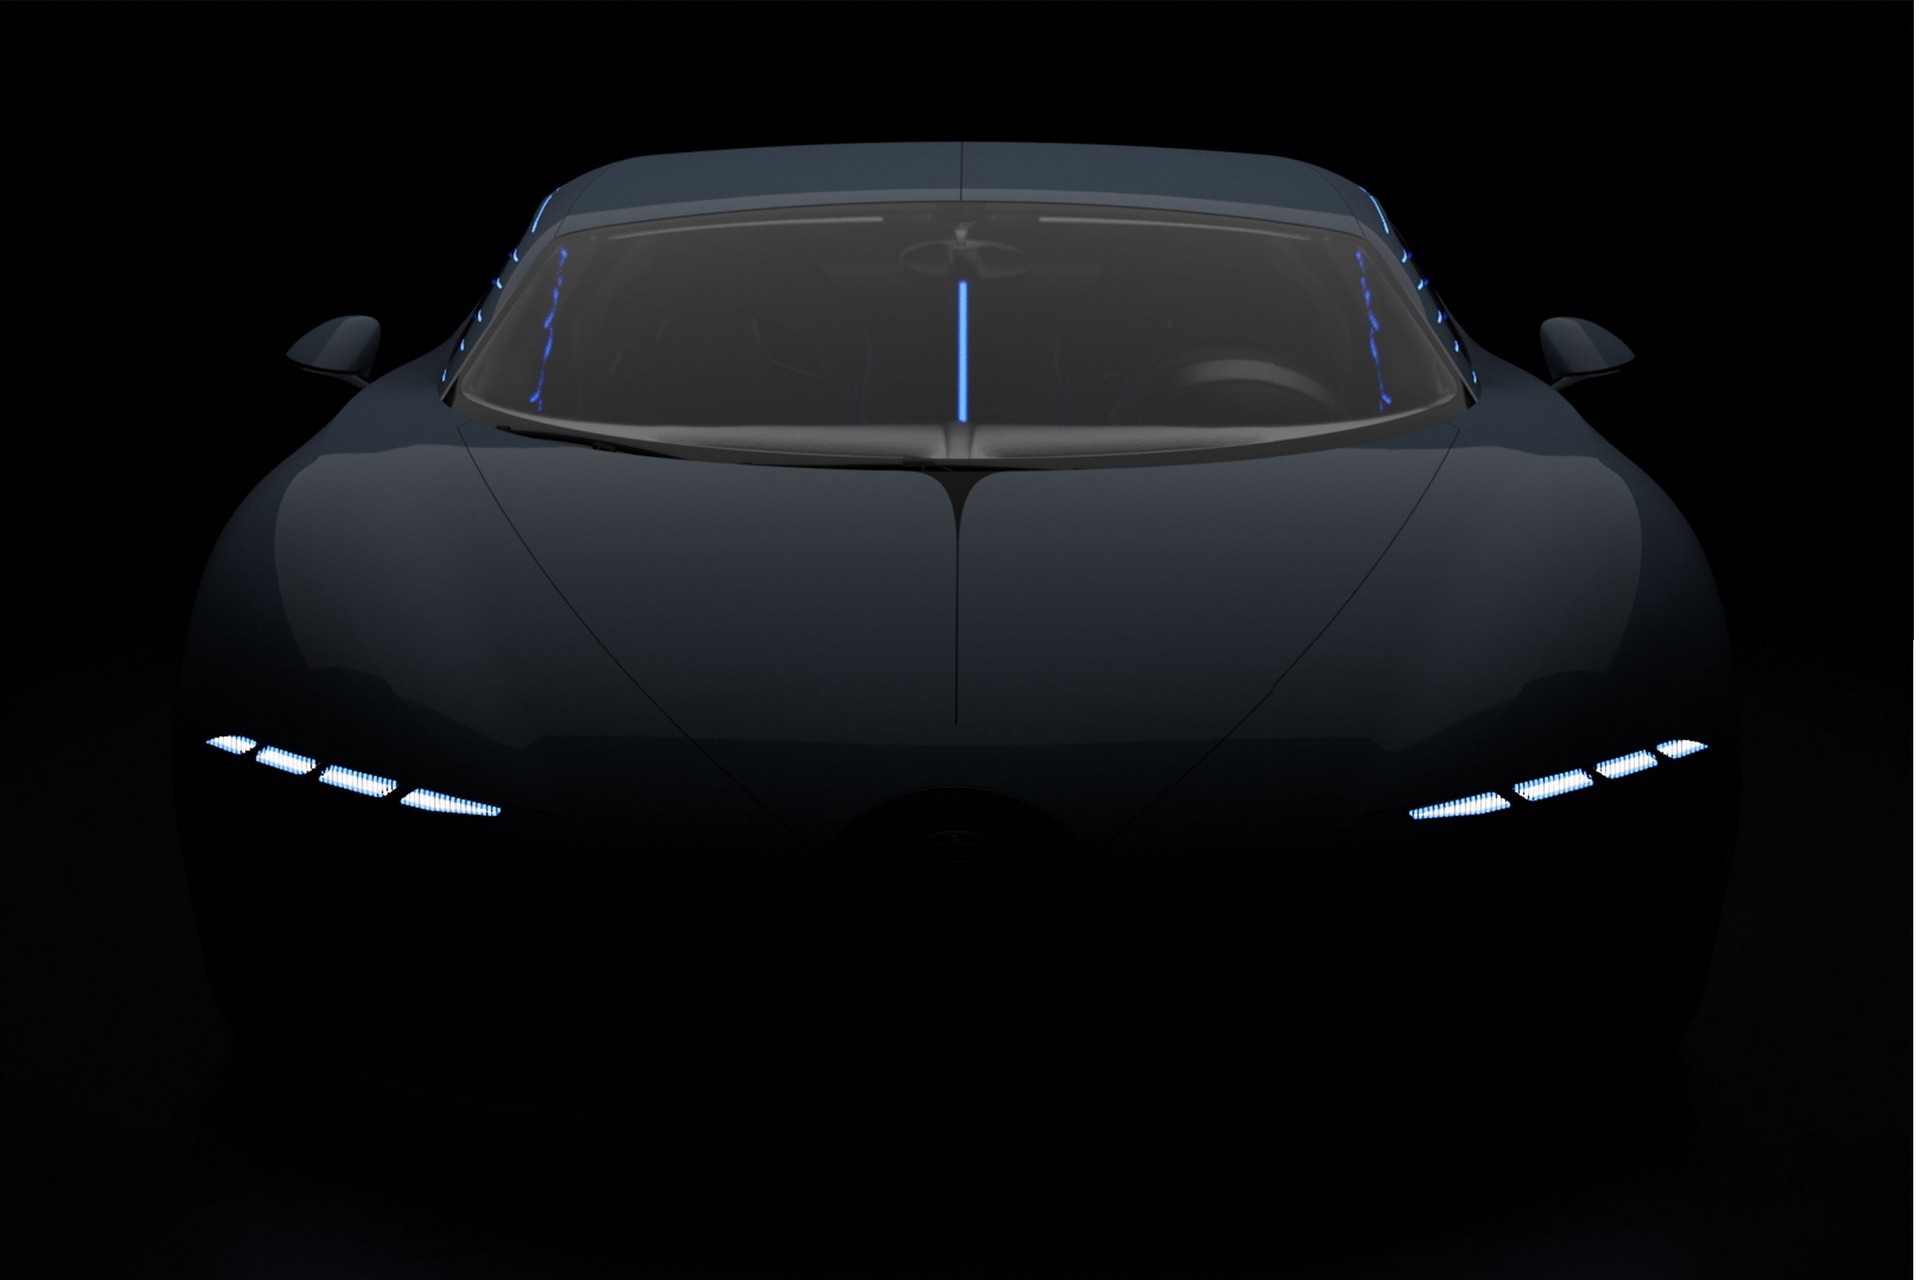 Первый четырехместный автомобиль Bugatti — полностью электрическая люксовая ракета